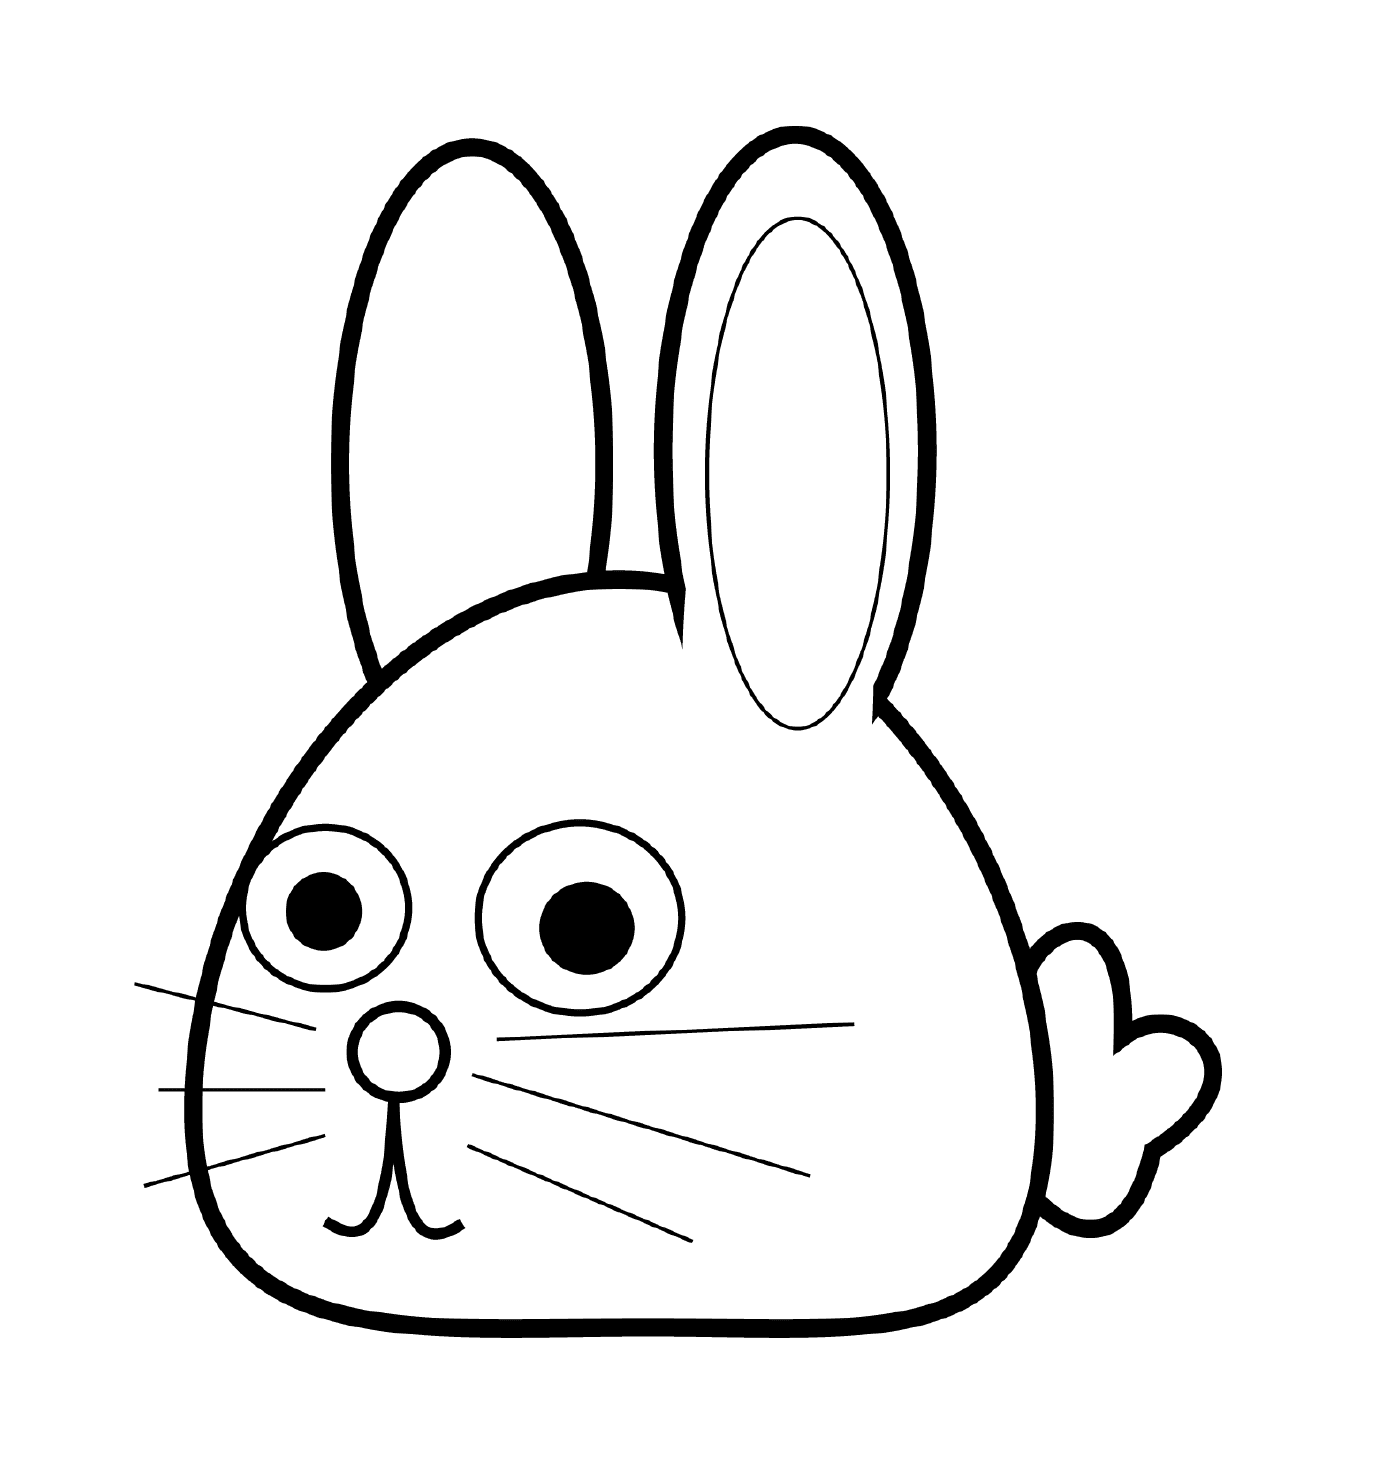  Conejo cabeza adorable kawaii 